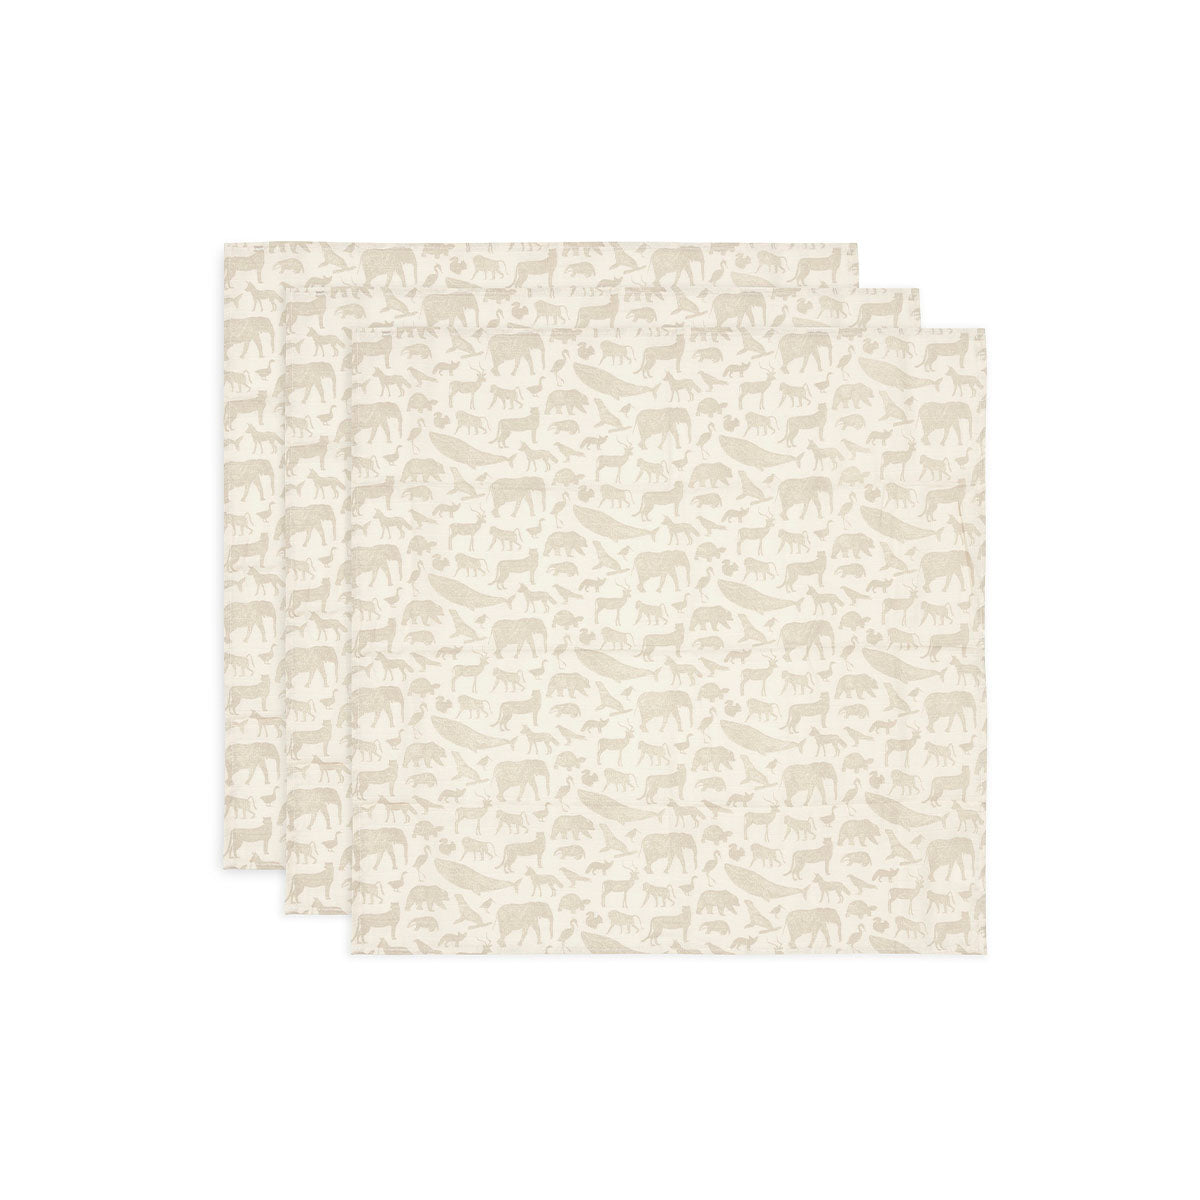 Een musthave: de 3-pack hydrofiel doek small in de variant animals nougat van Jollein. Want van swaddle doeken heb je als ouders nooit genoeg. Functioneel en hip! Afmeting 70 x 70 cm. VanZus